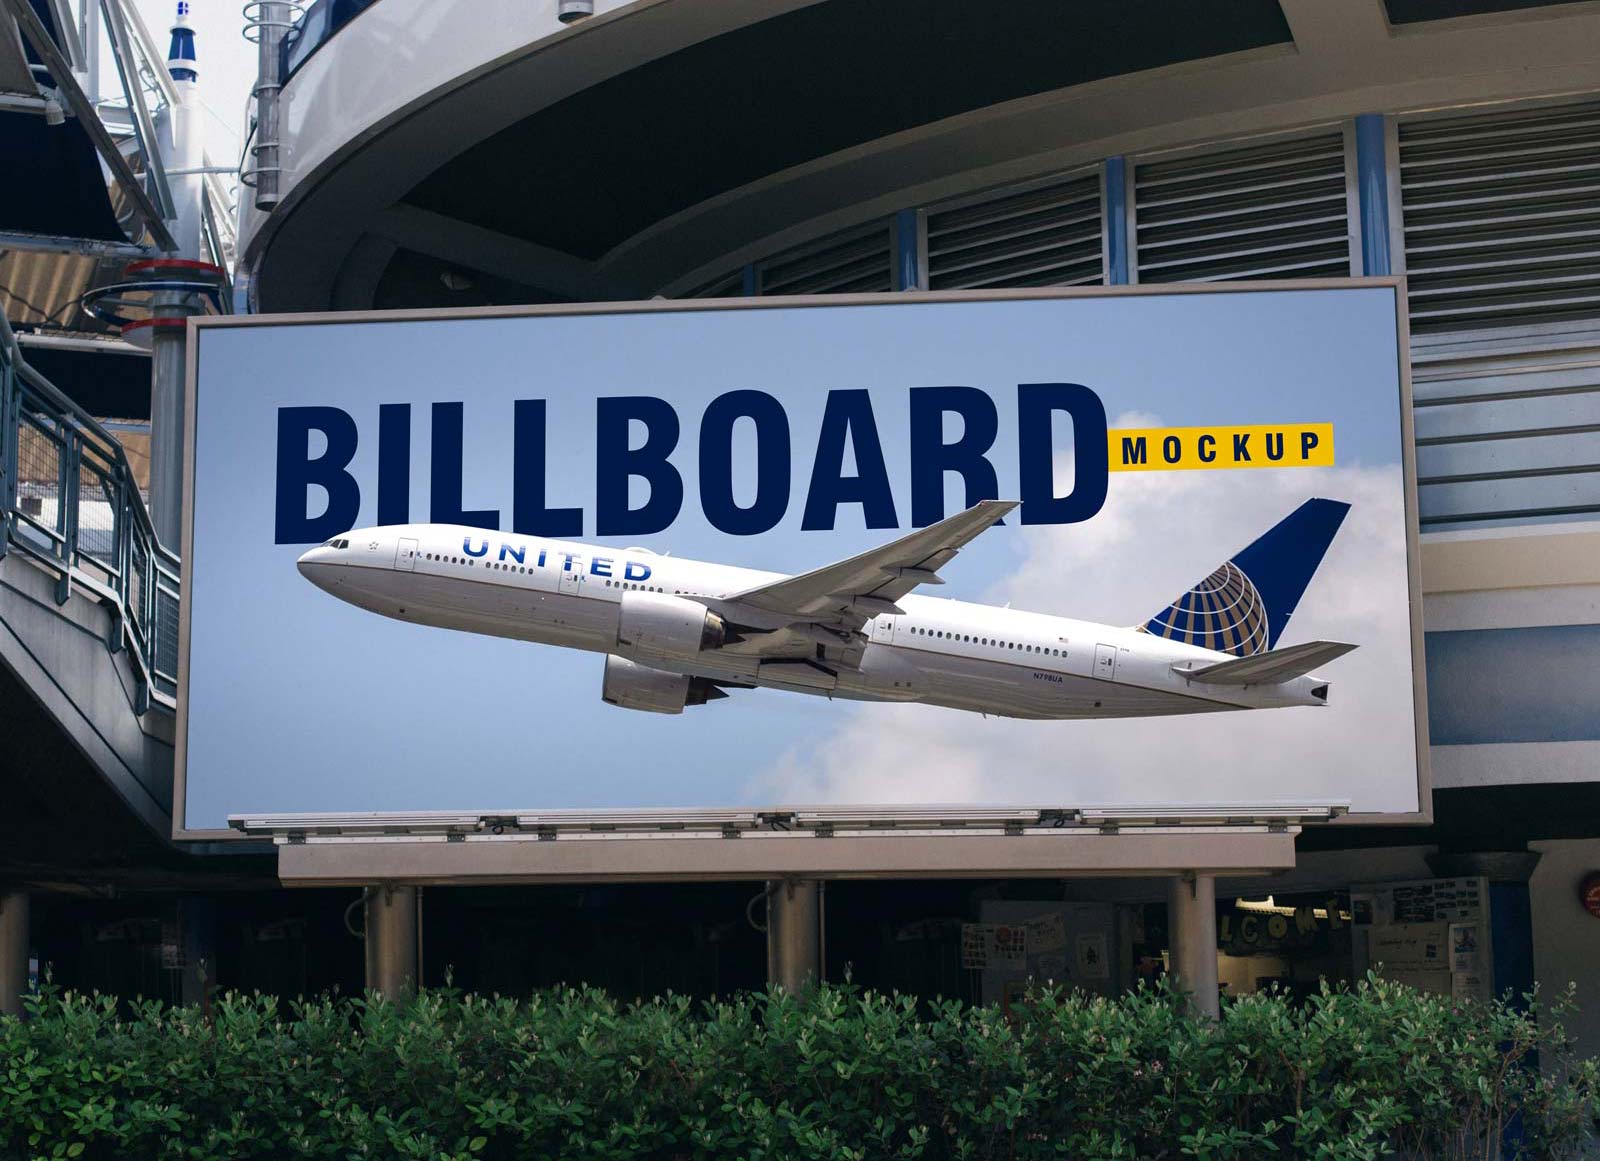 Аэропорт Billboard Mockup